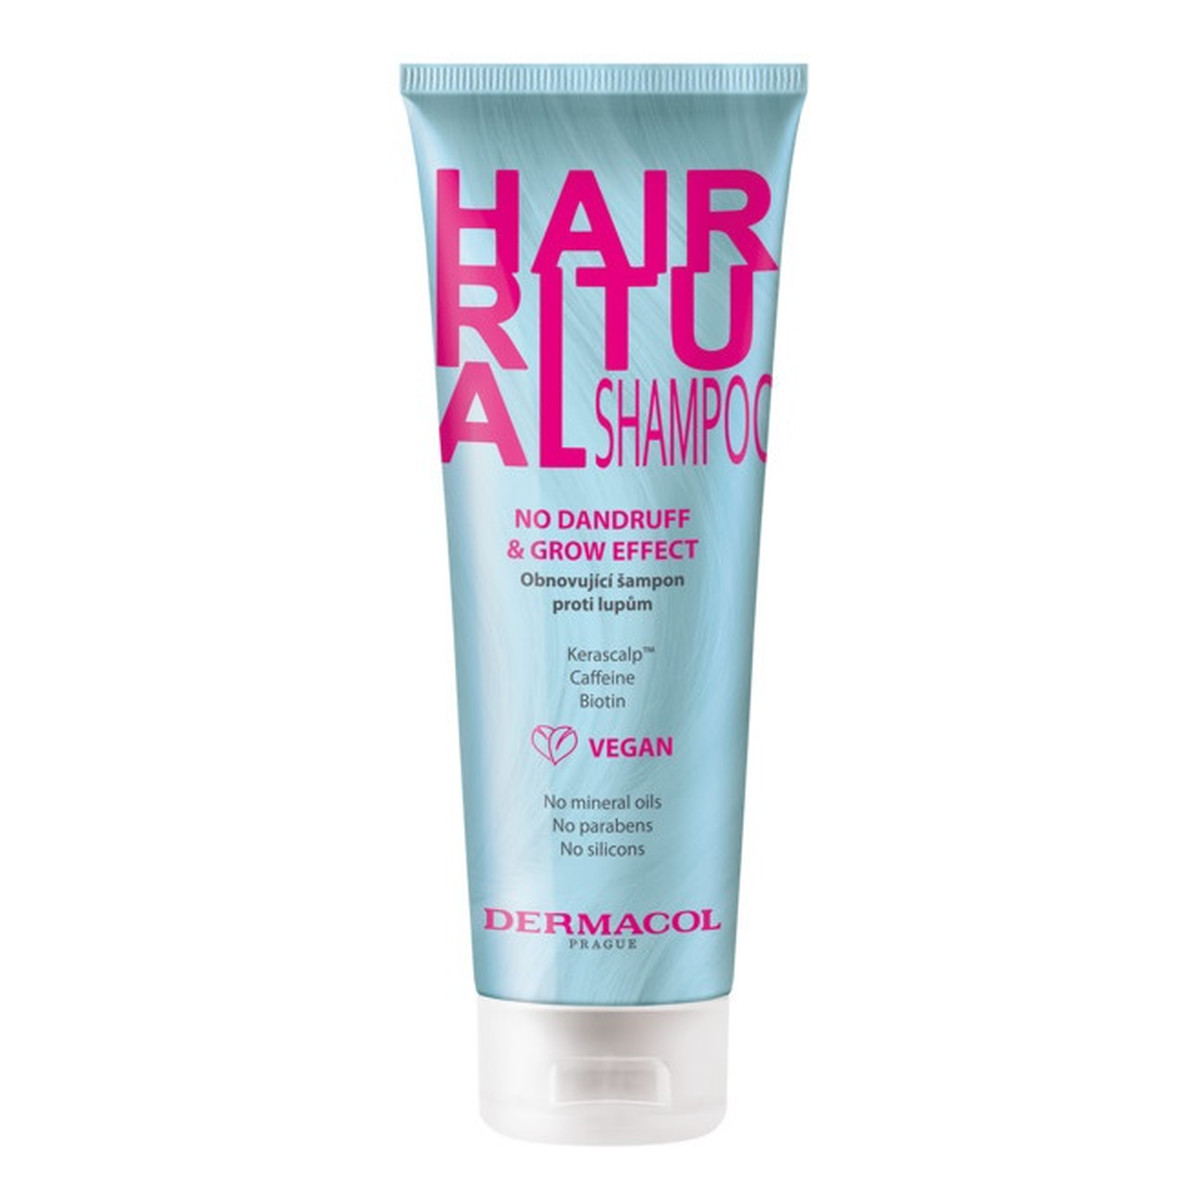 Dermacol Hair ritual shampoo szampon do włosów no dandruff & grow effect 250ml